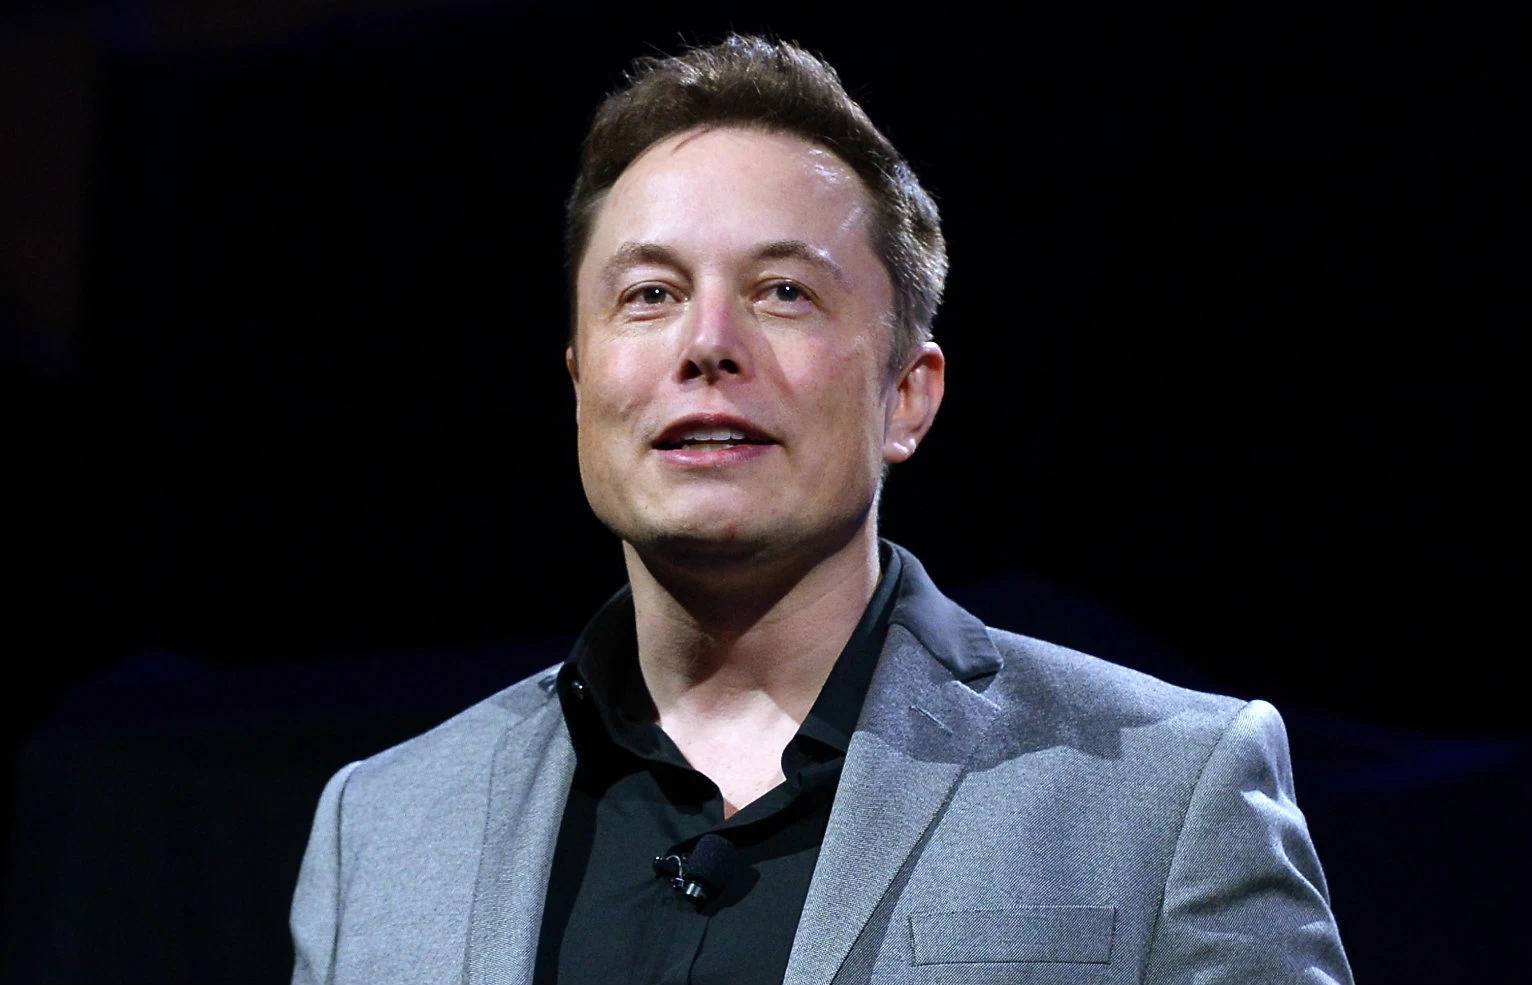 Elon Musk to host SNL